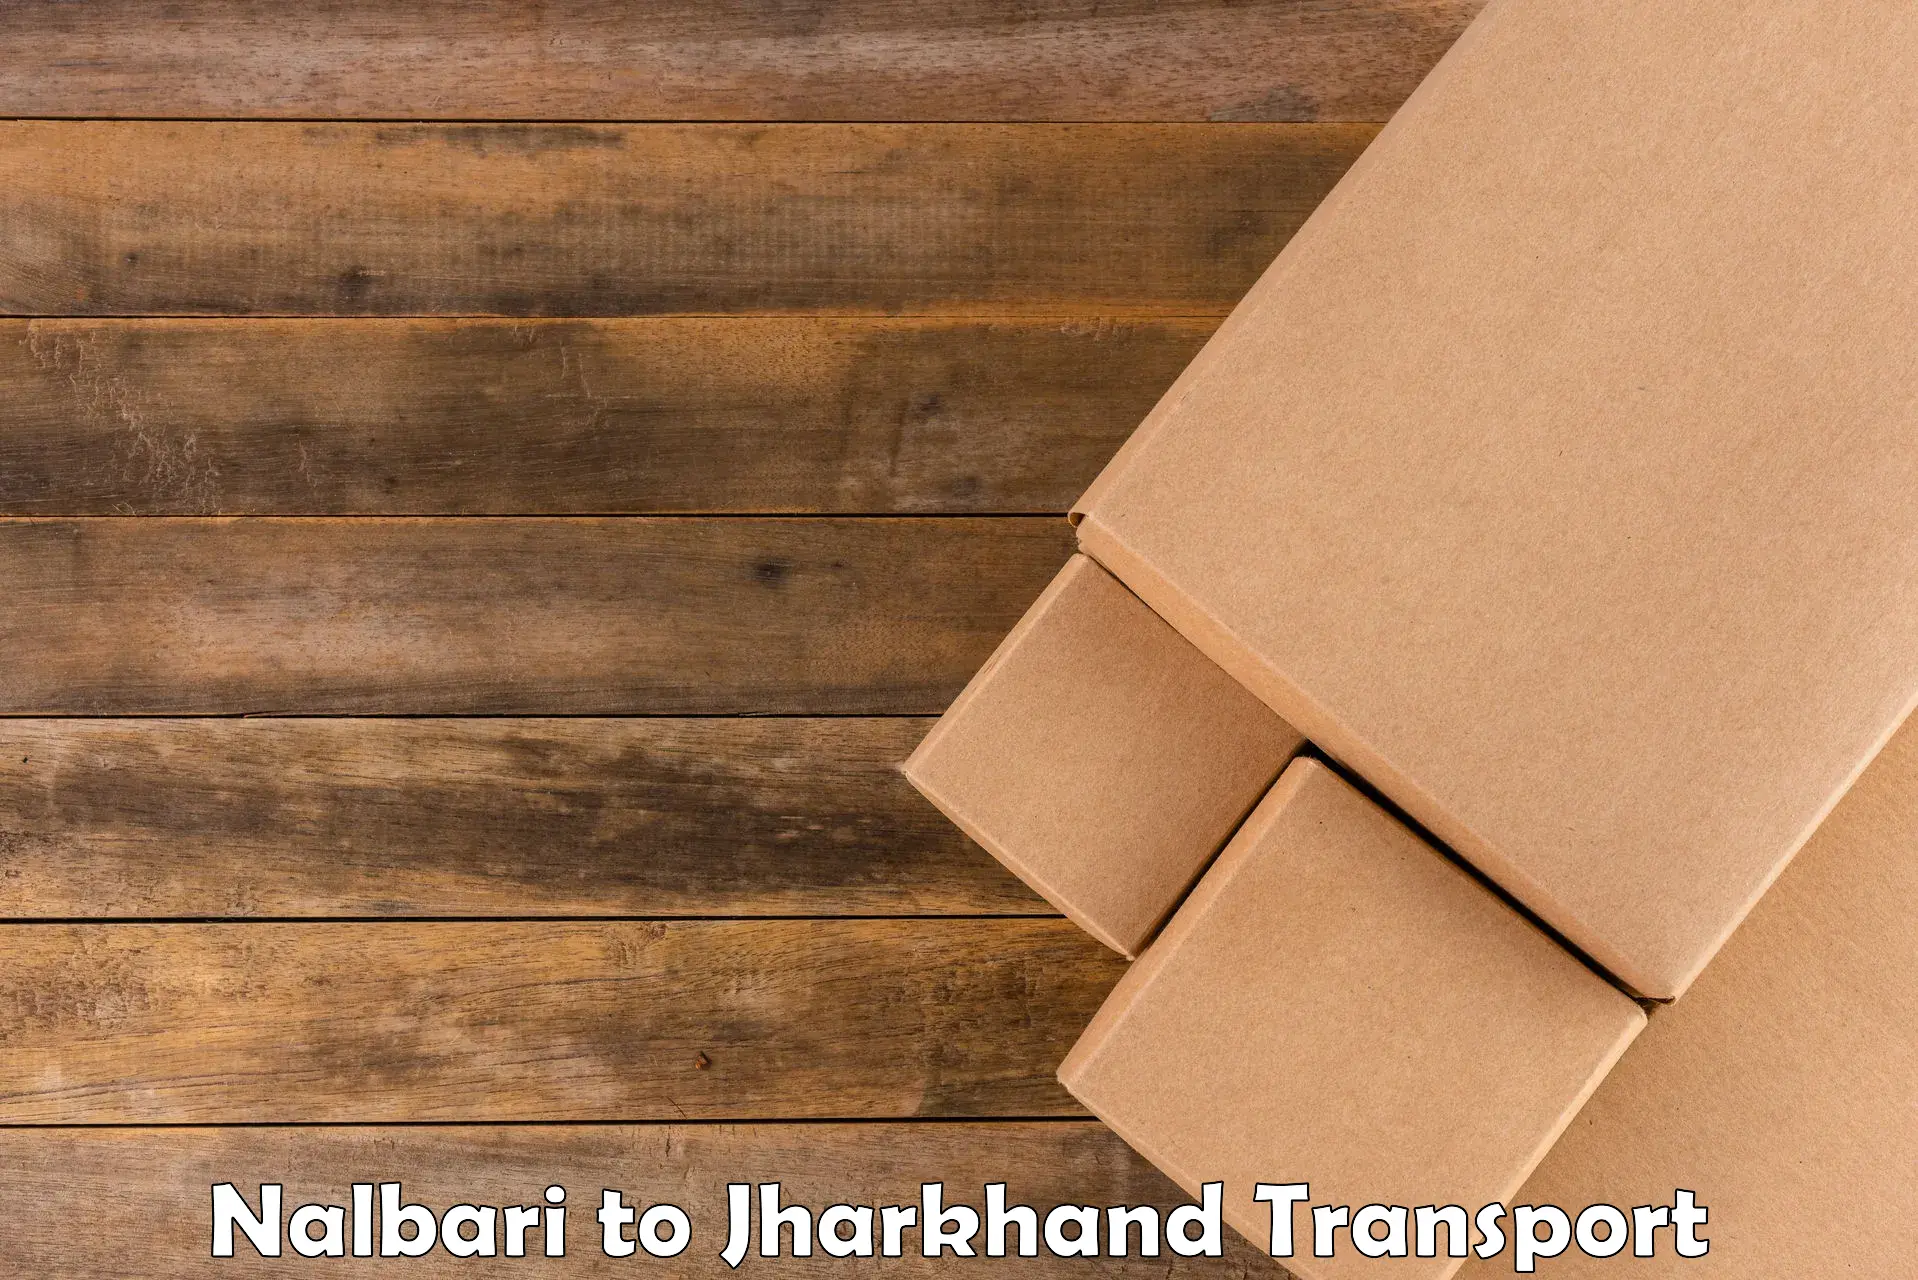 Goods transport services Nalbari to Medininagar